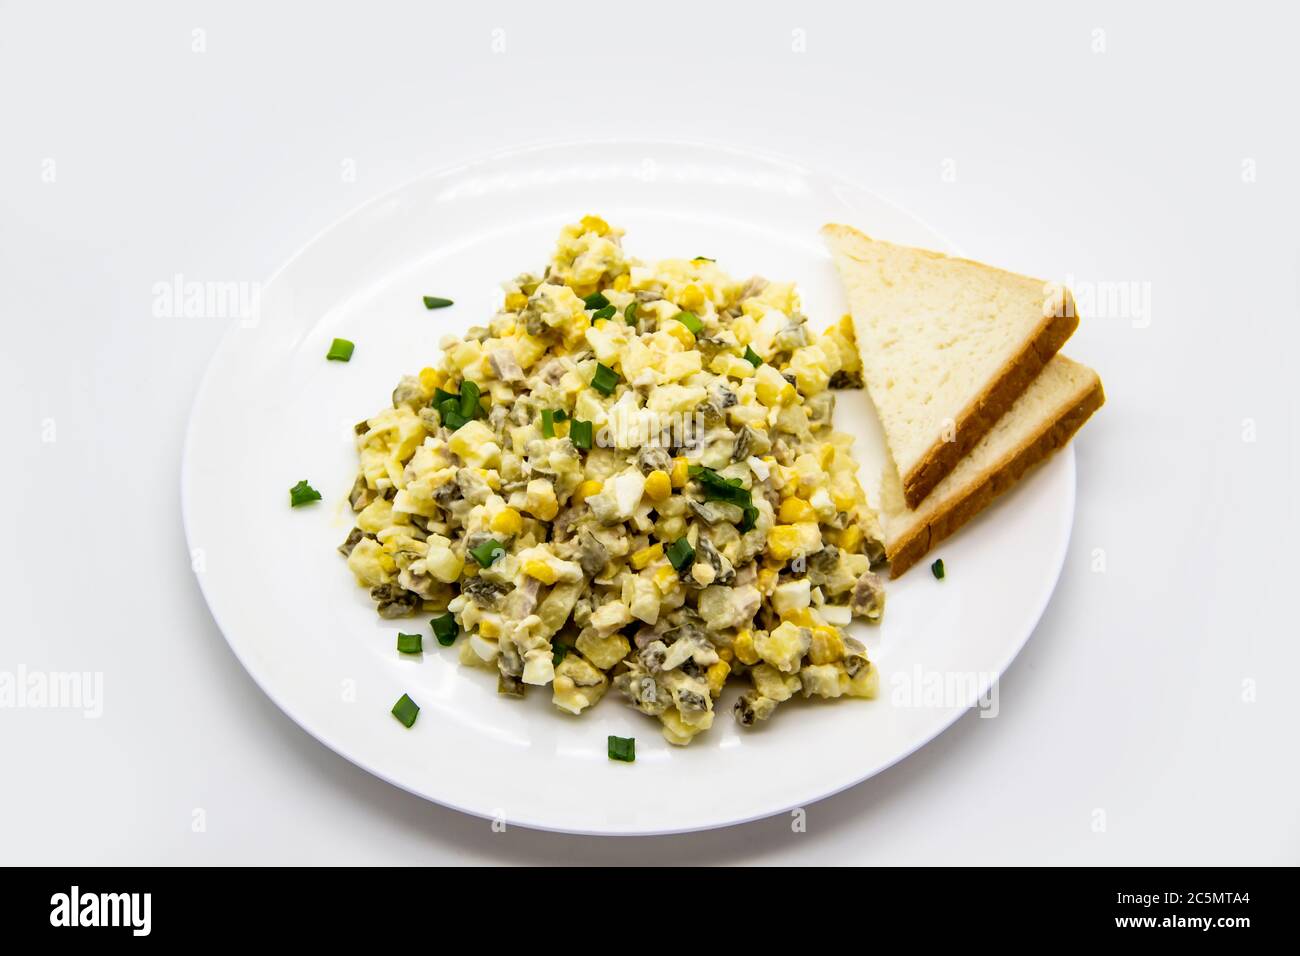 Salade ukrainienne et russe Olivier selon une nouvelle recette sur une assiette blanche. Salade saine Olivier avec viande, maïs et tranches de pain blanc. Délique Banque D'Images